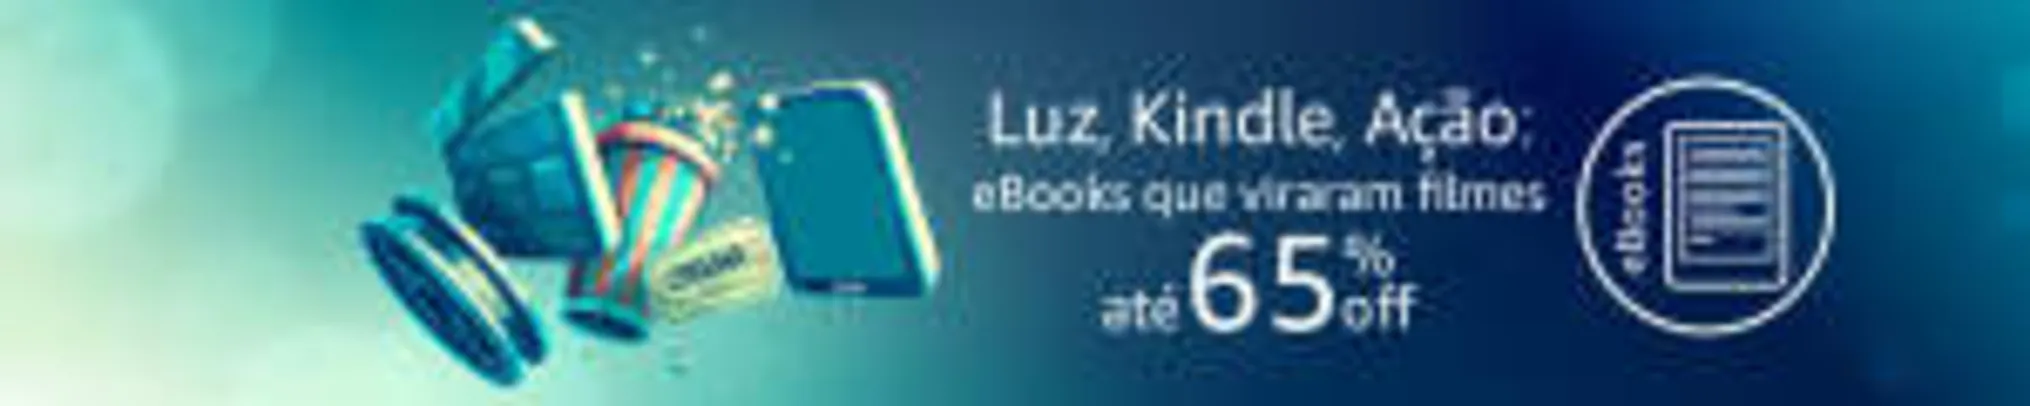 Grátis: Promoção de ebooks na Amazon | Pelando